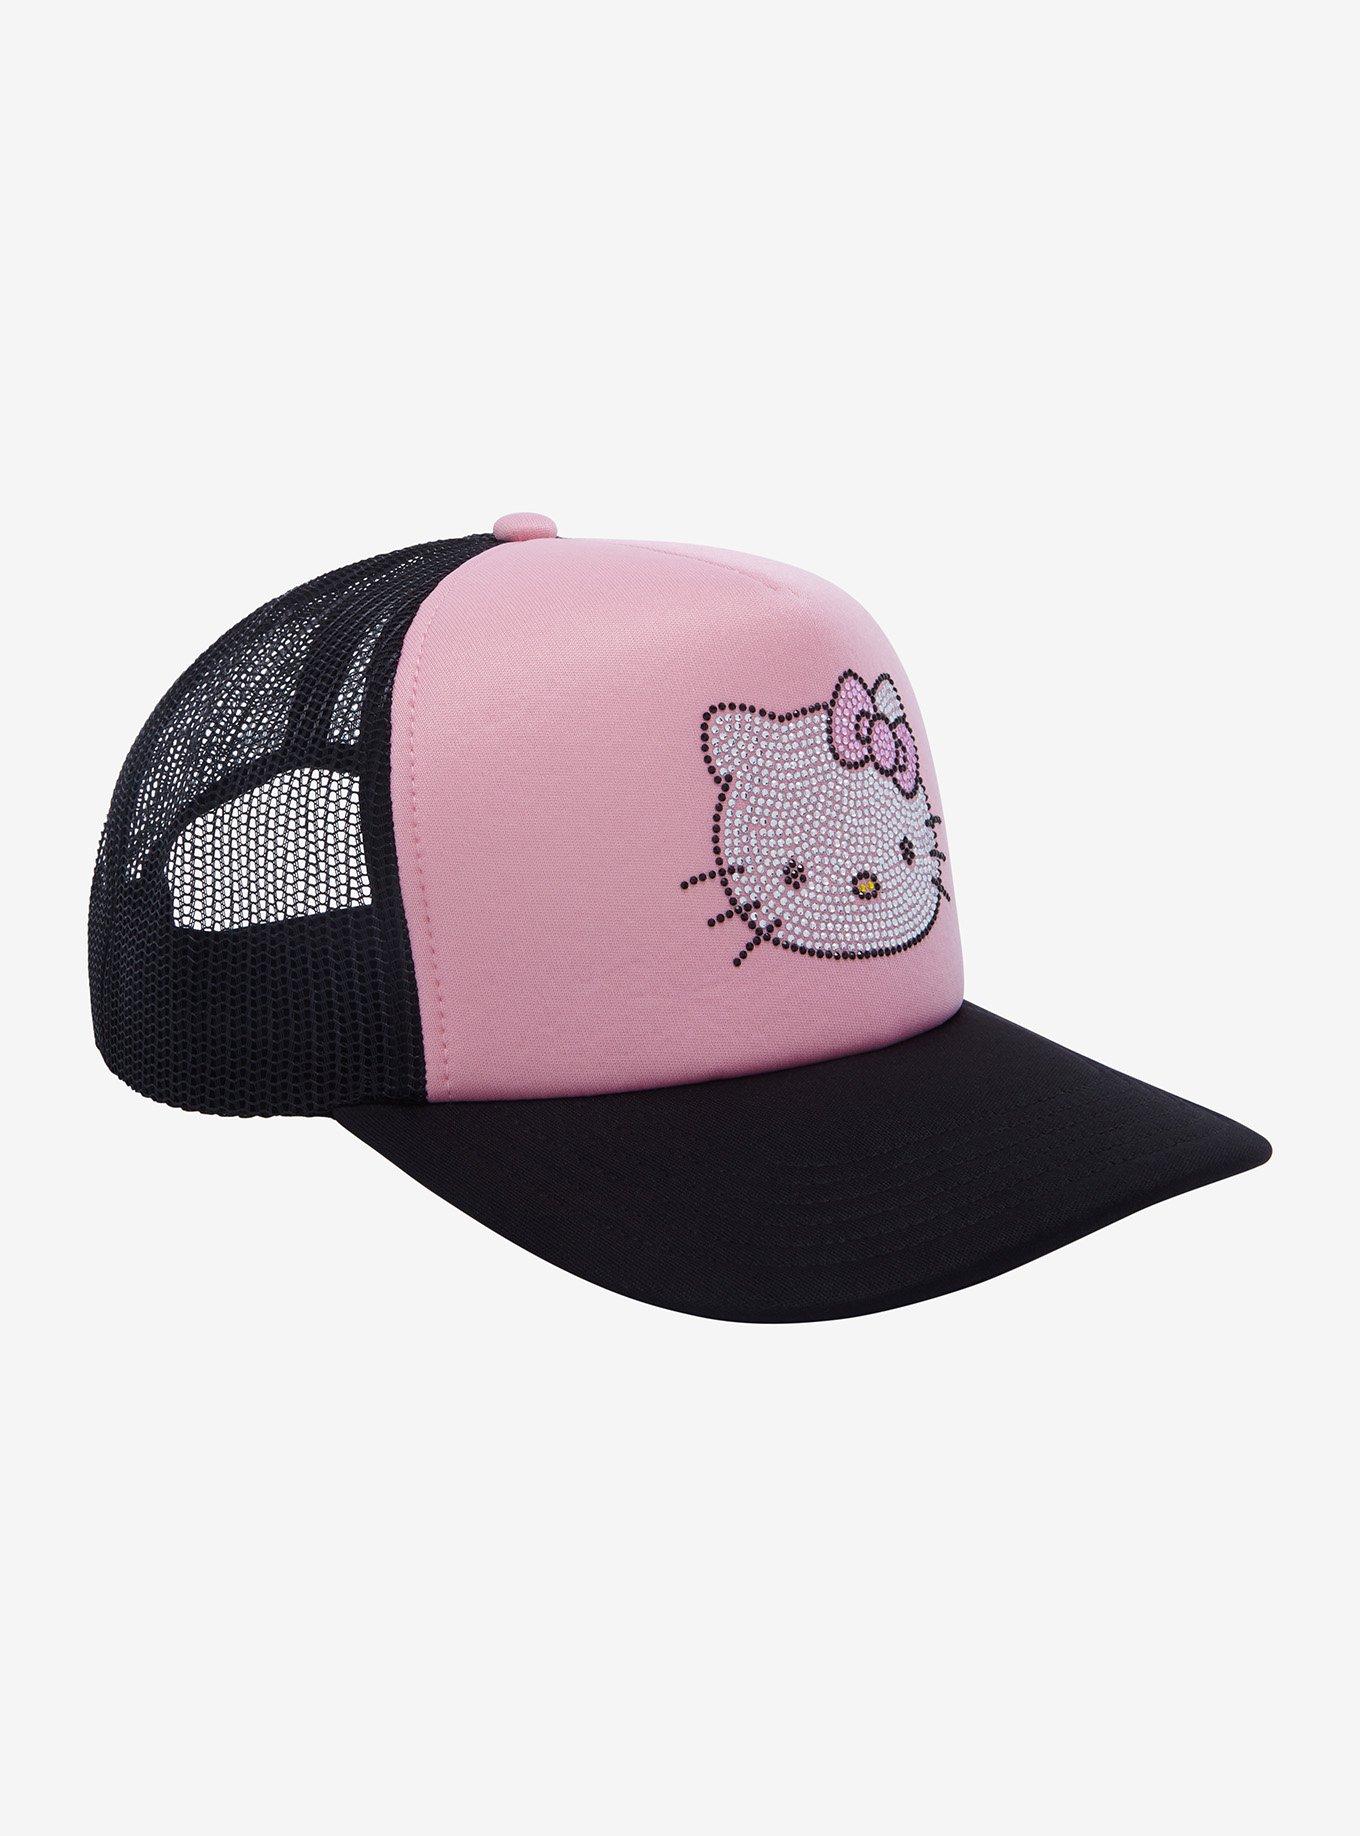 Hats Women Hello Kitty, Hello Kitty Caps Hats